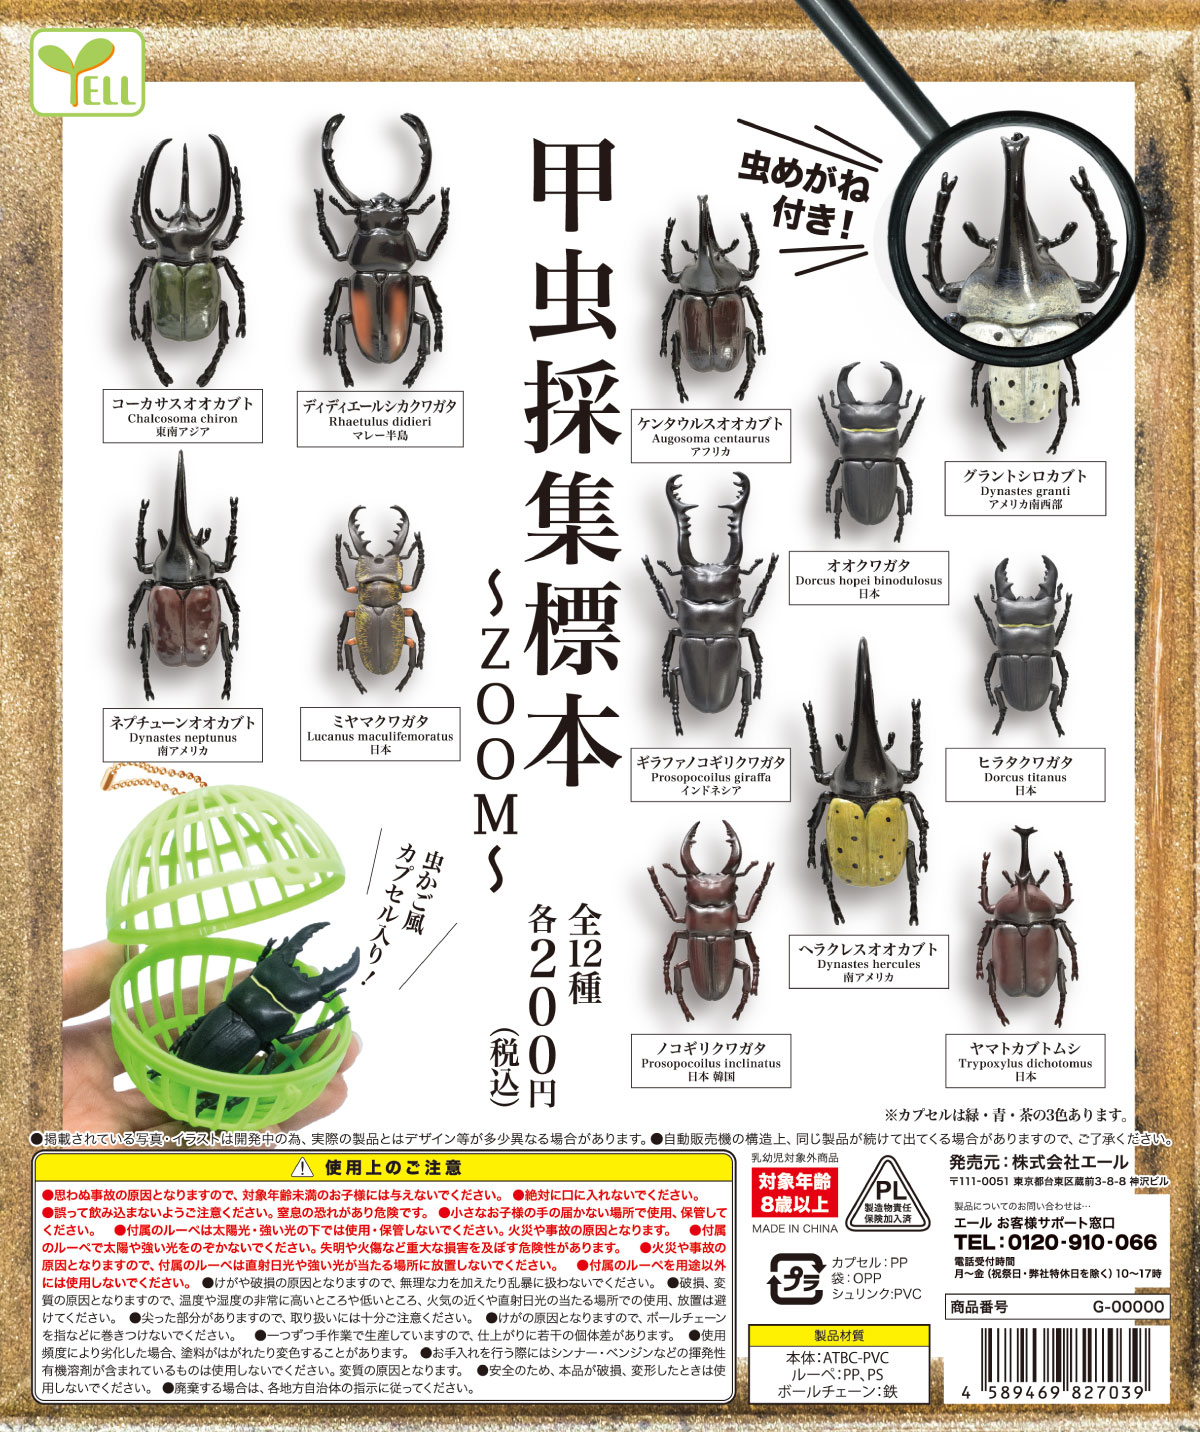 现货日本Yell扭蛋 昆虫模型摆件 仿真独角仙玩具 甲虫采集标本